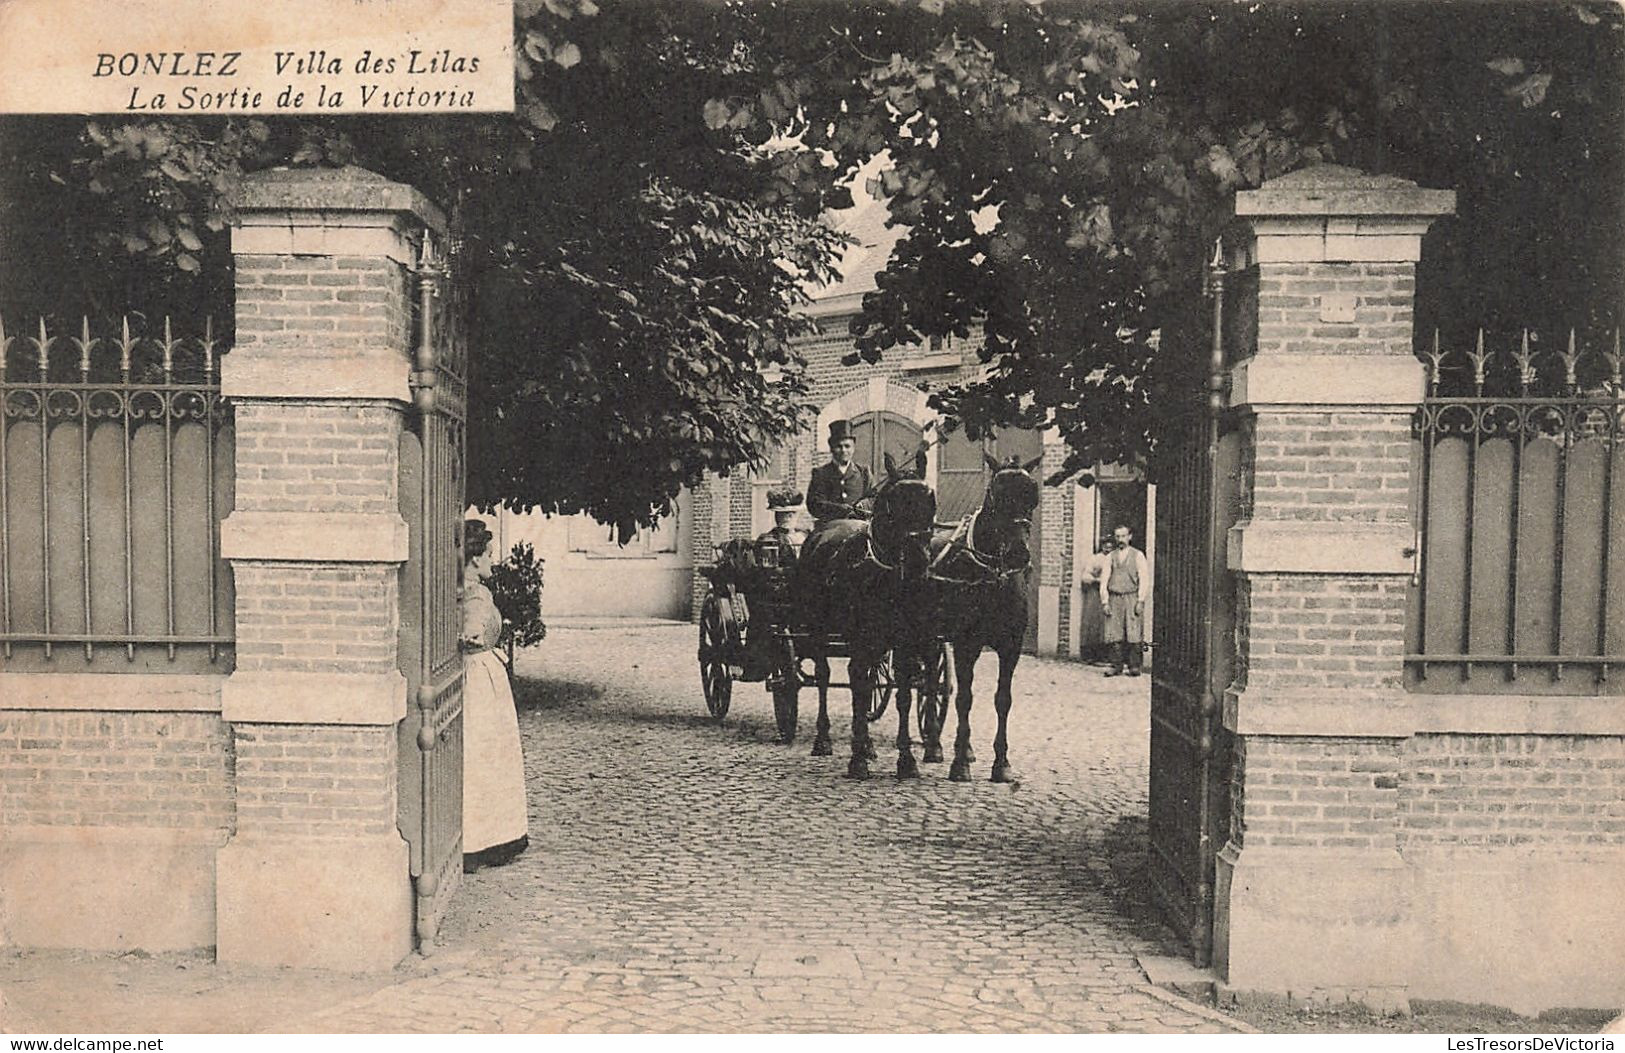 Belgique - Bonlez - Villas Des Lilas - La Sortie De La Victoria - Calèche - Cheval  - Carte Postale Ancienne - Chaumont-Gistoux